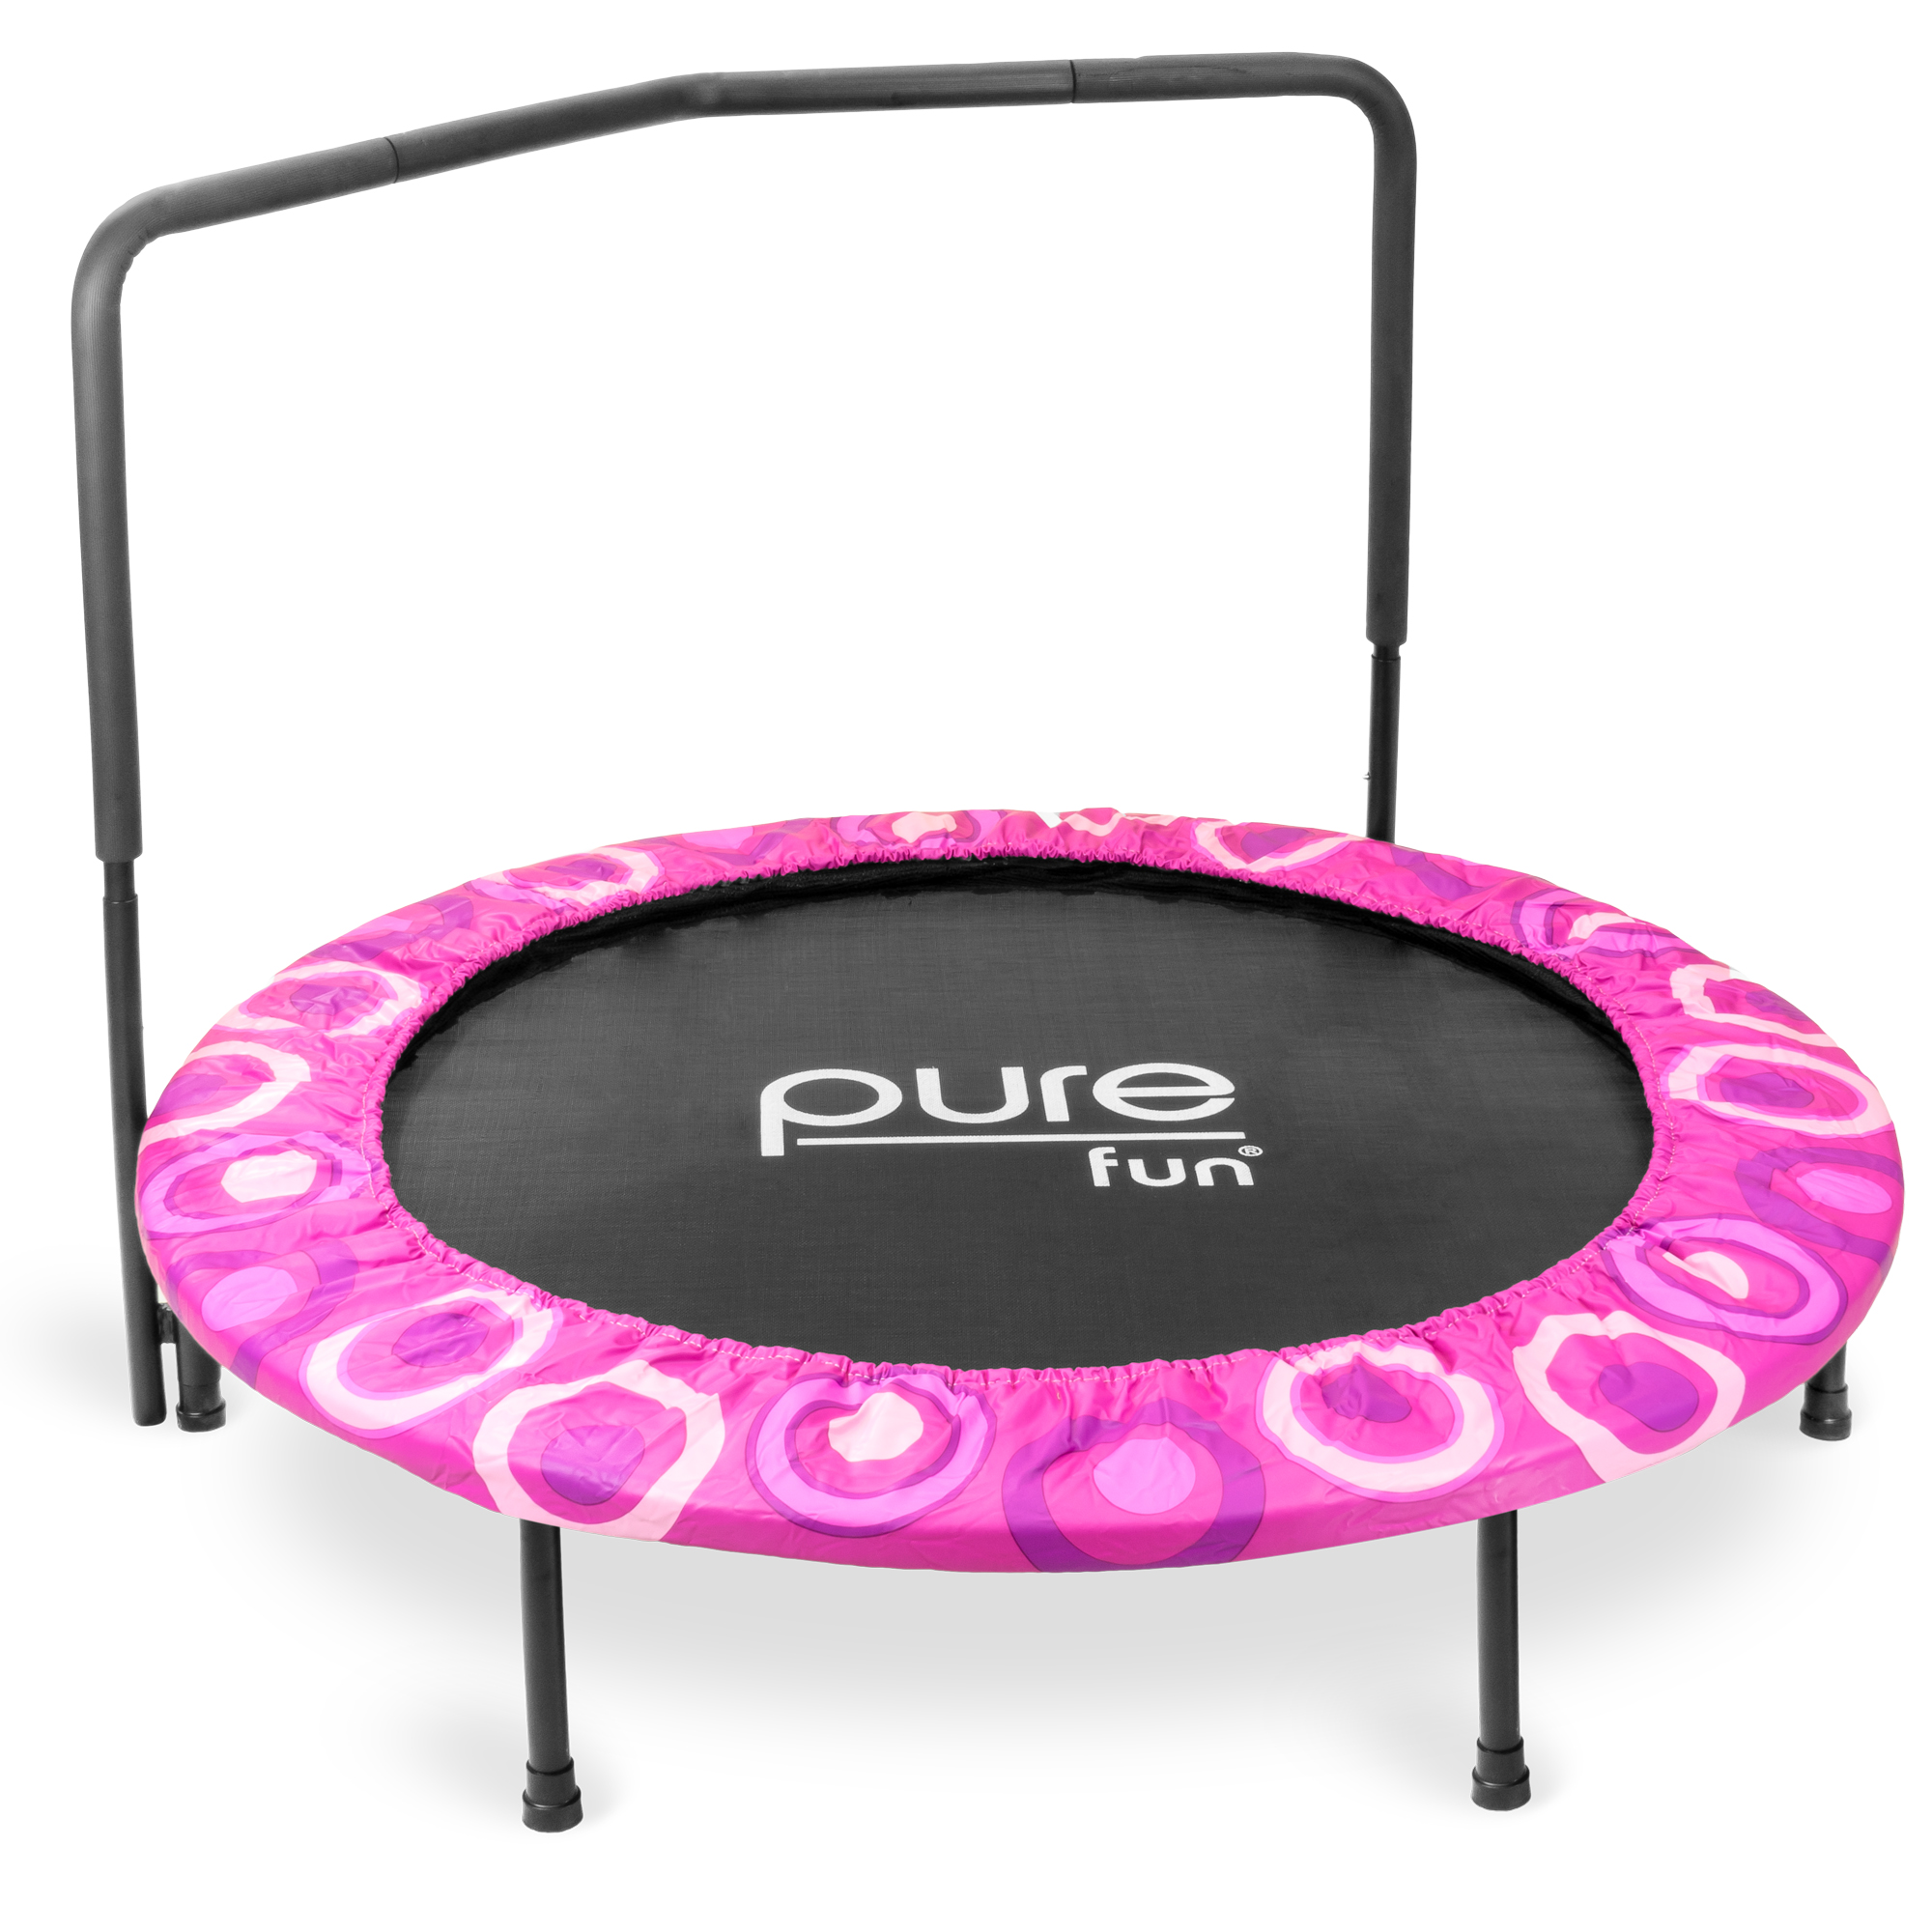 Pure Fun 48-inch Super Jumper Kids Trampoline - Pink 9009sj